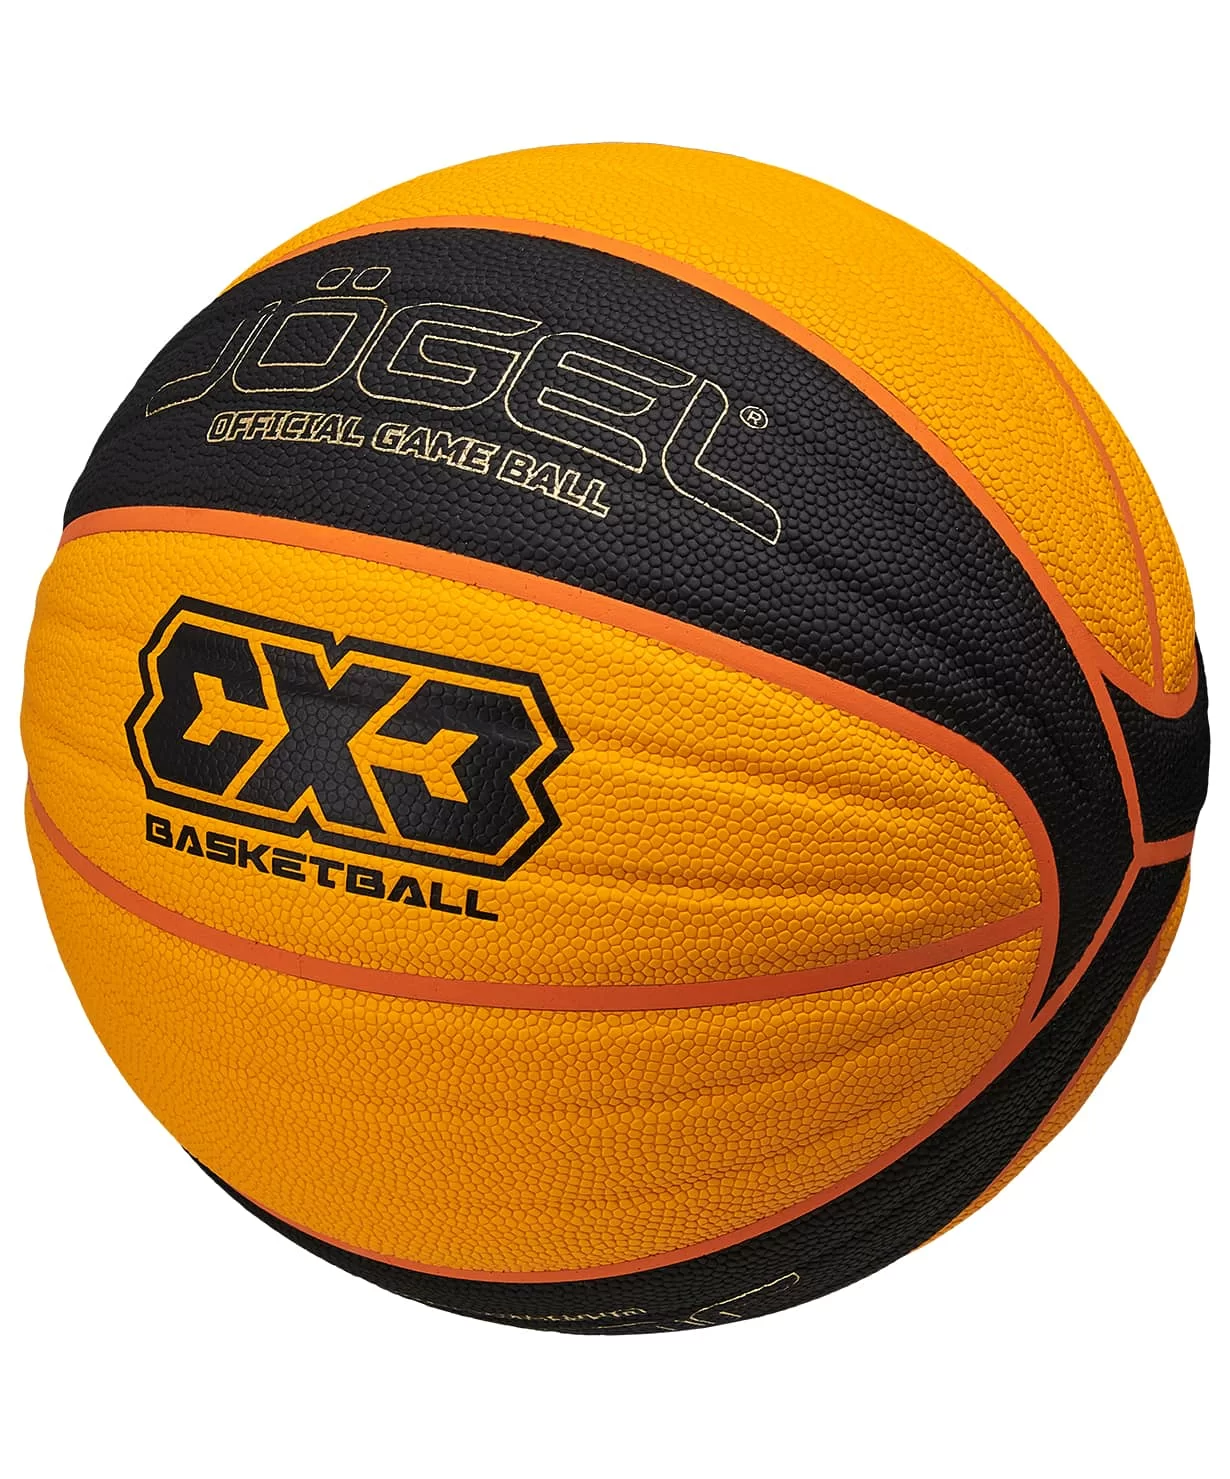 Фото Мяч баскетбольный Jogel 3x3 размер №6 00986 со склада магазина Спортев